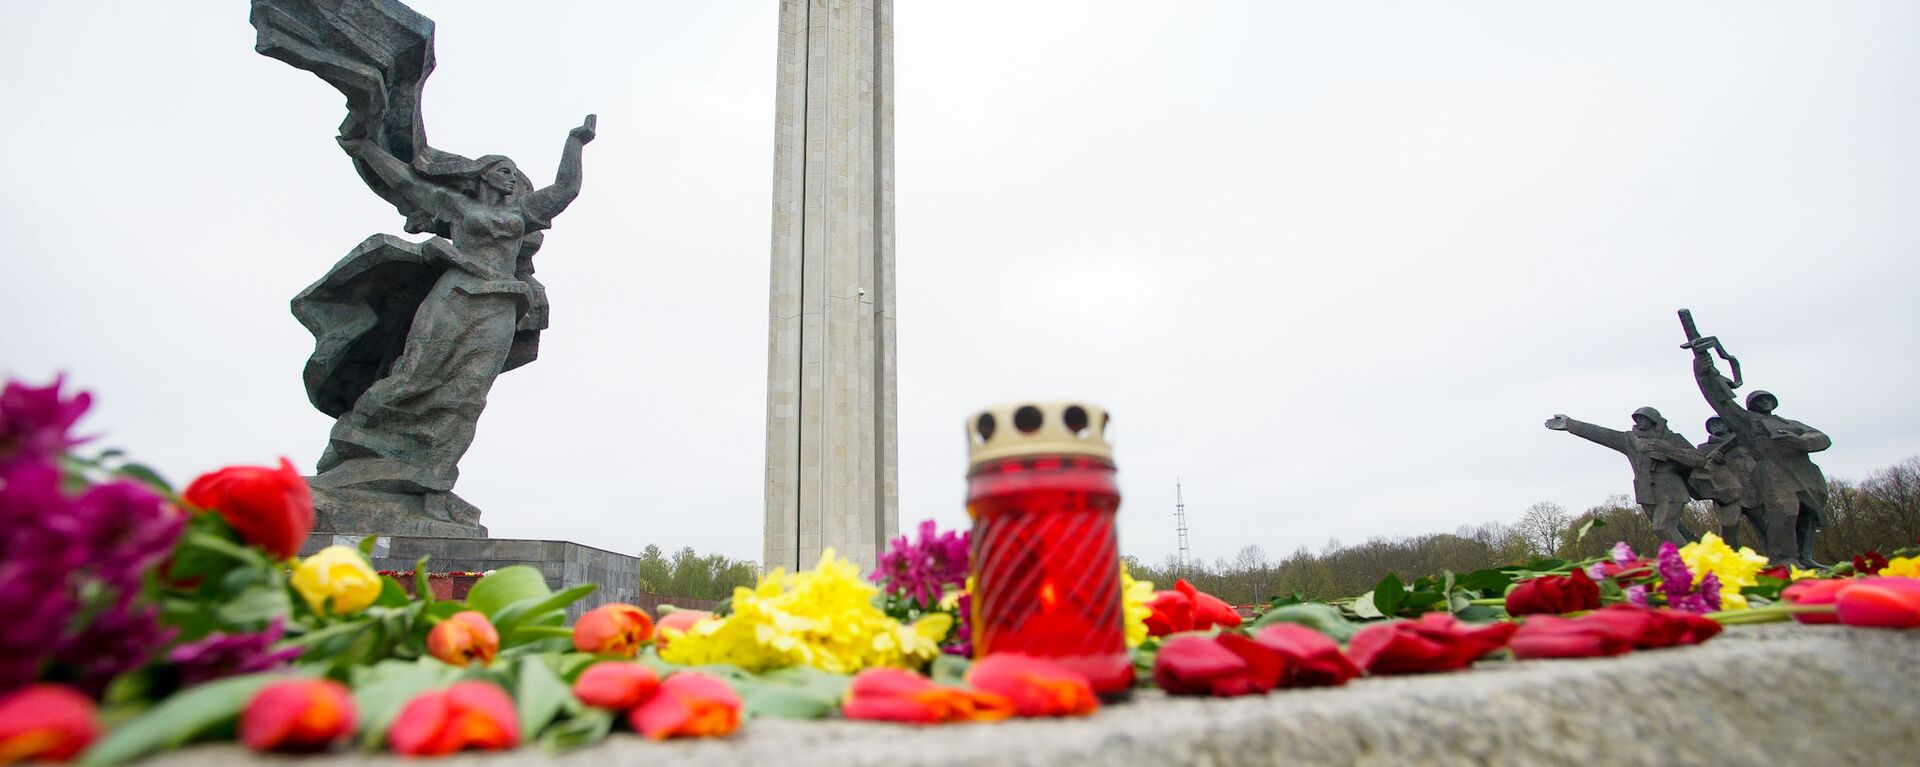 Цветы у памятника Освободителям в Риге 9 мая - Sputnik Латвия, 1920, 09.07.2020